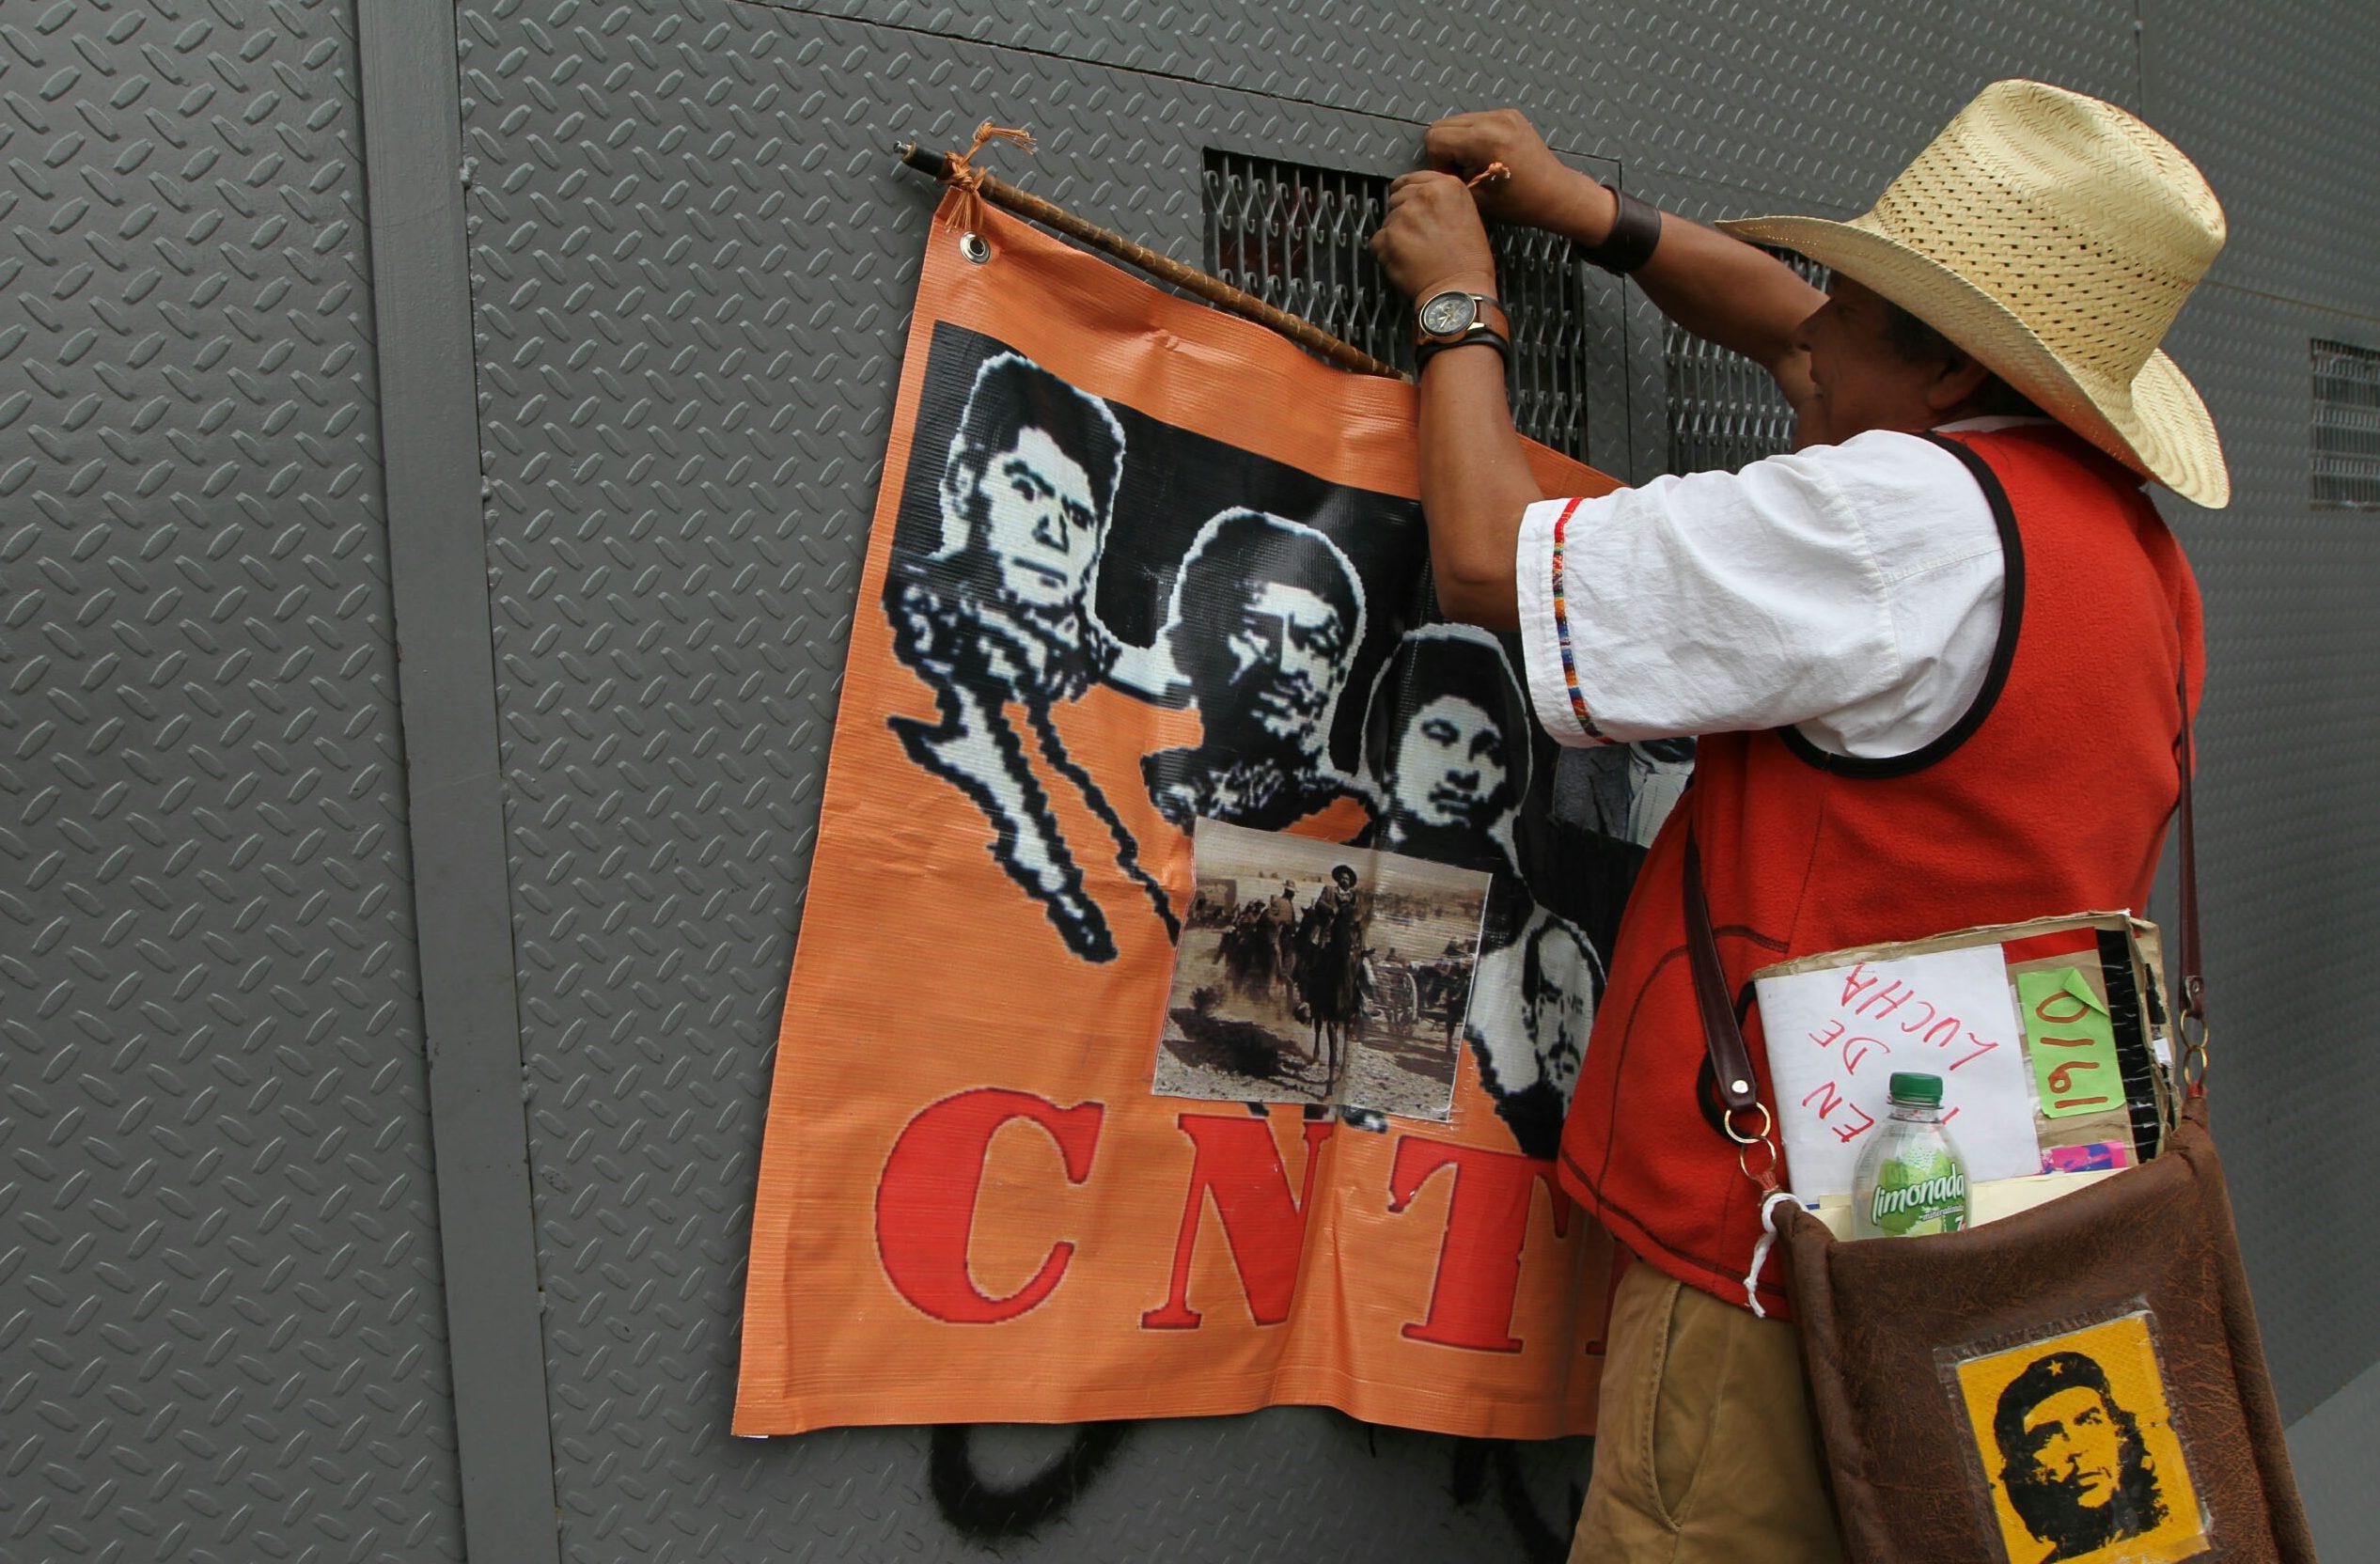 La CNTE marcha, toma medios y bloquea centros comerciales en 4 estados